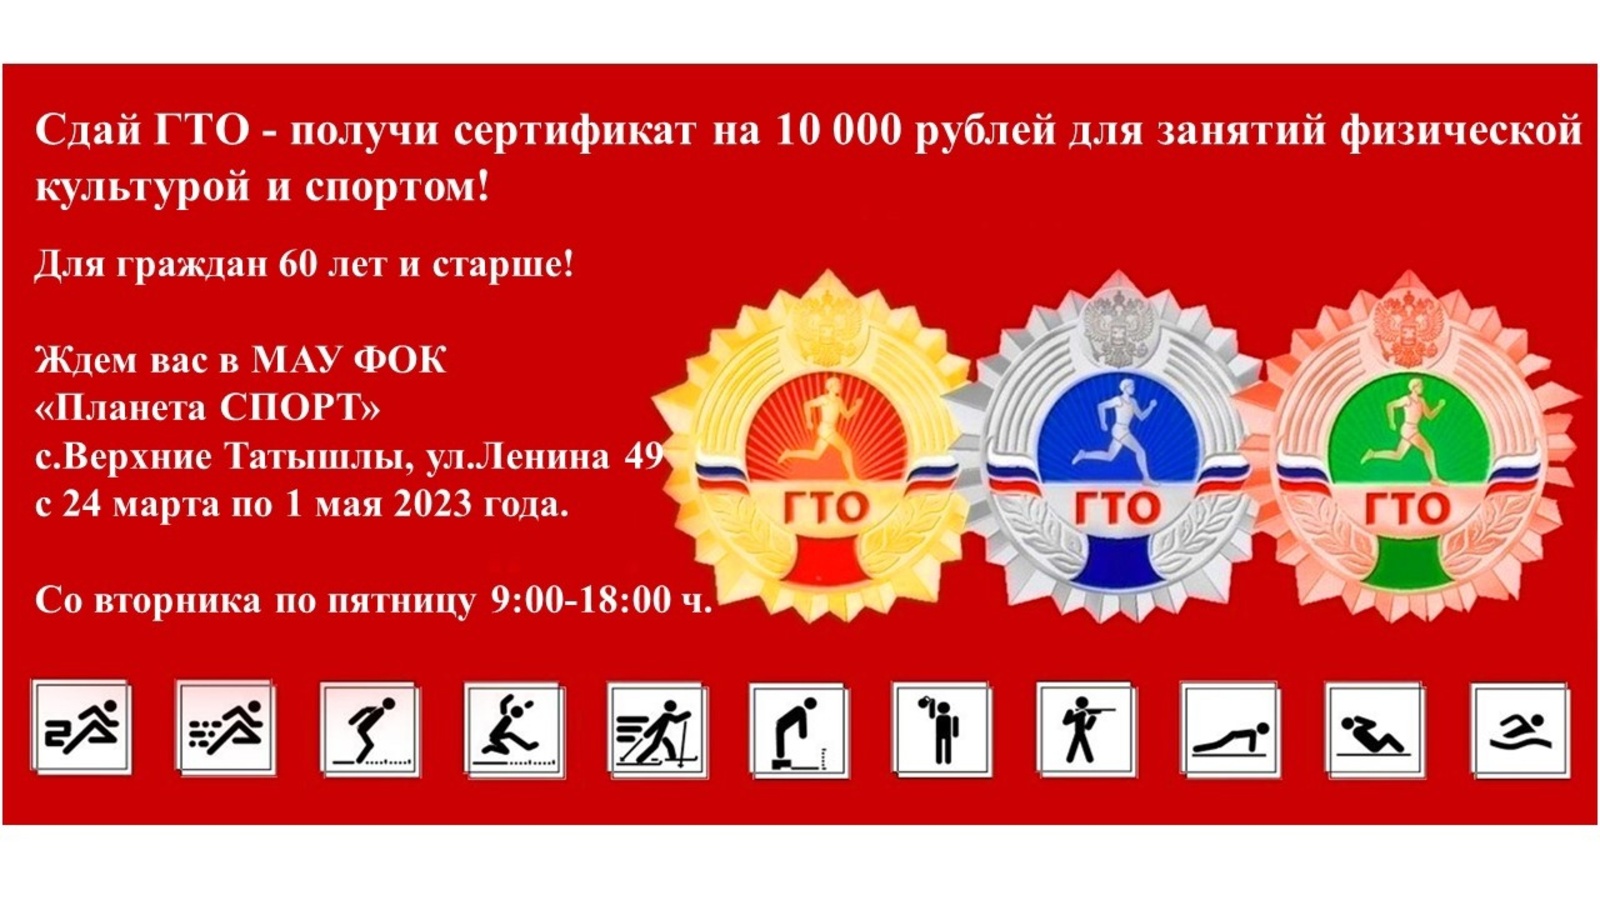 Сдай ГТО - получи сертификат на 10 000 рублей для занятий физической культурой и спортом!